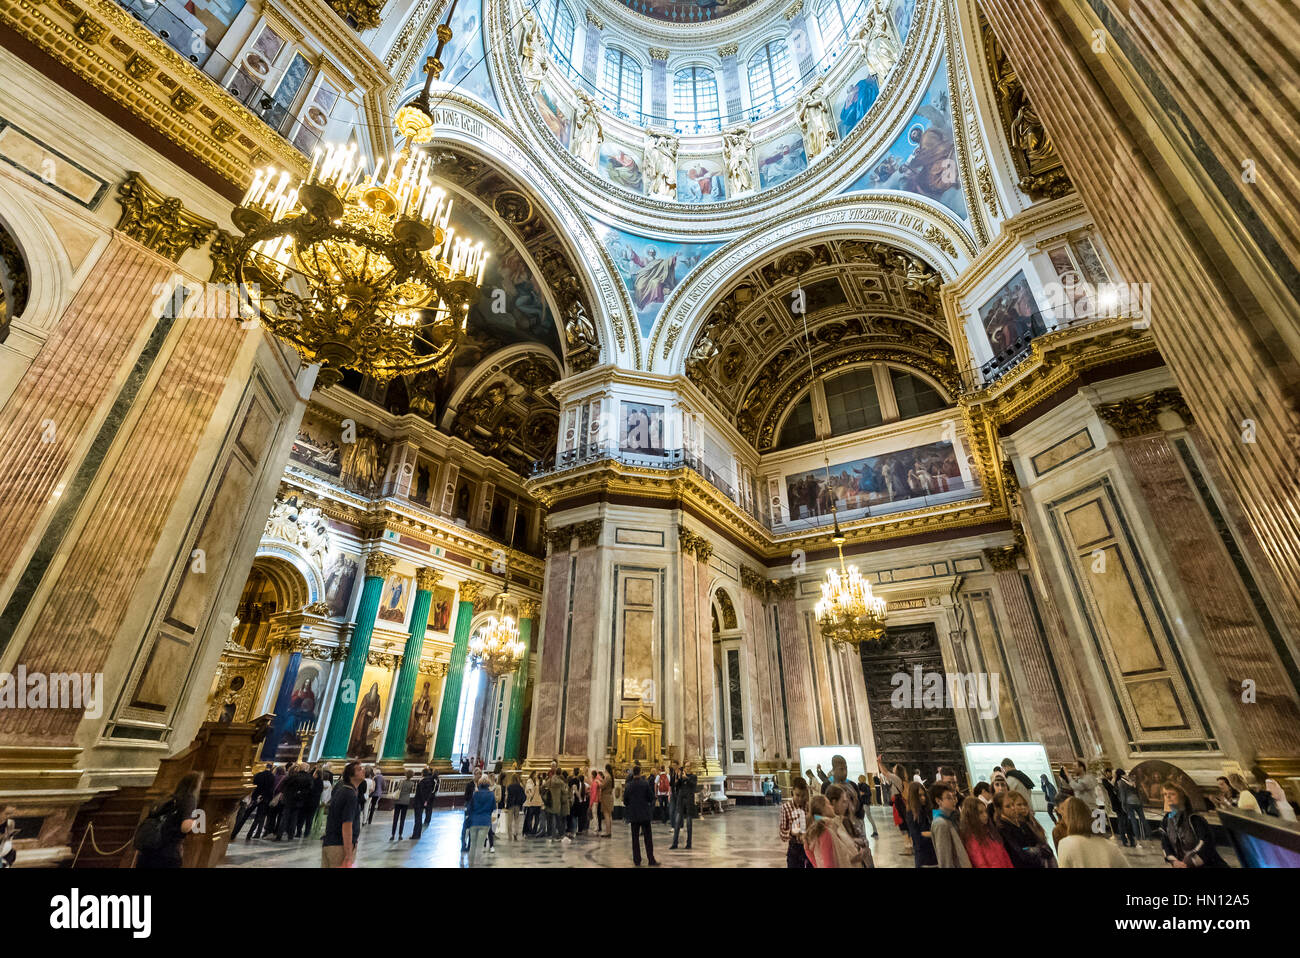 Les intérieurs de la cathédrale St Isaacs, Saint-Pétersbourg, Russie Banque D'Images